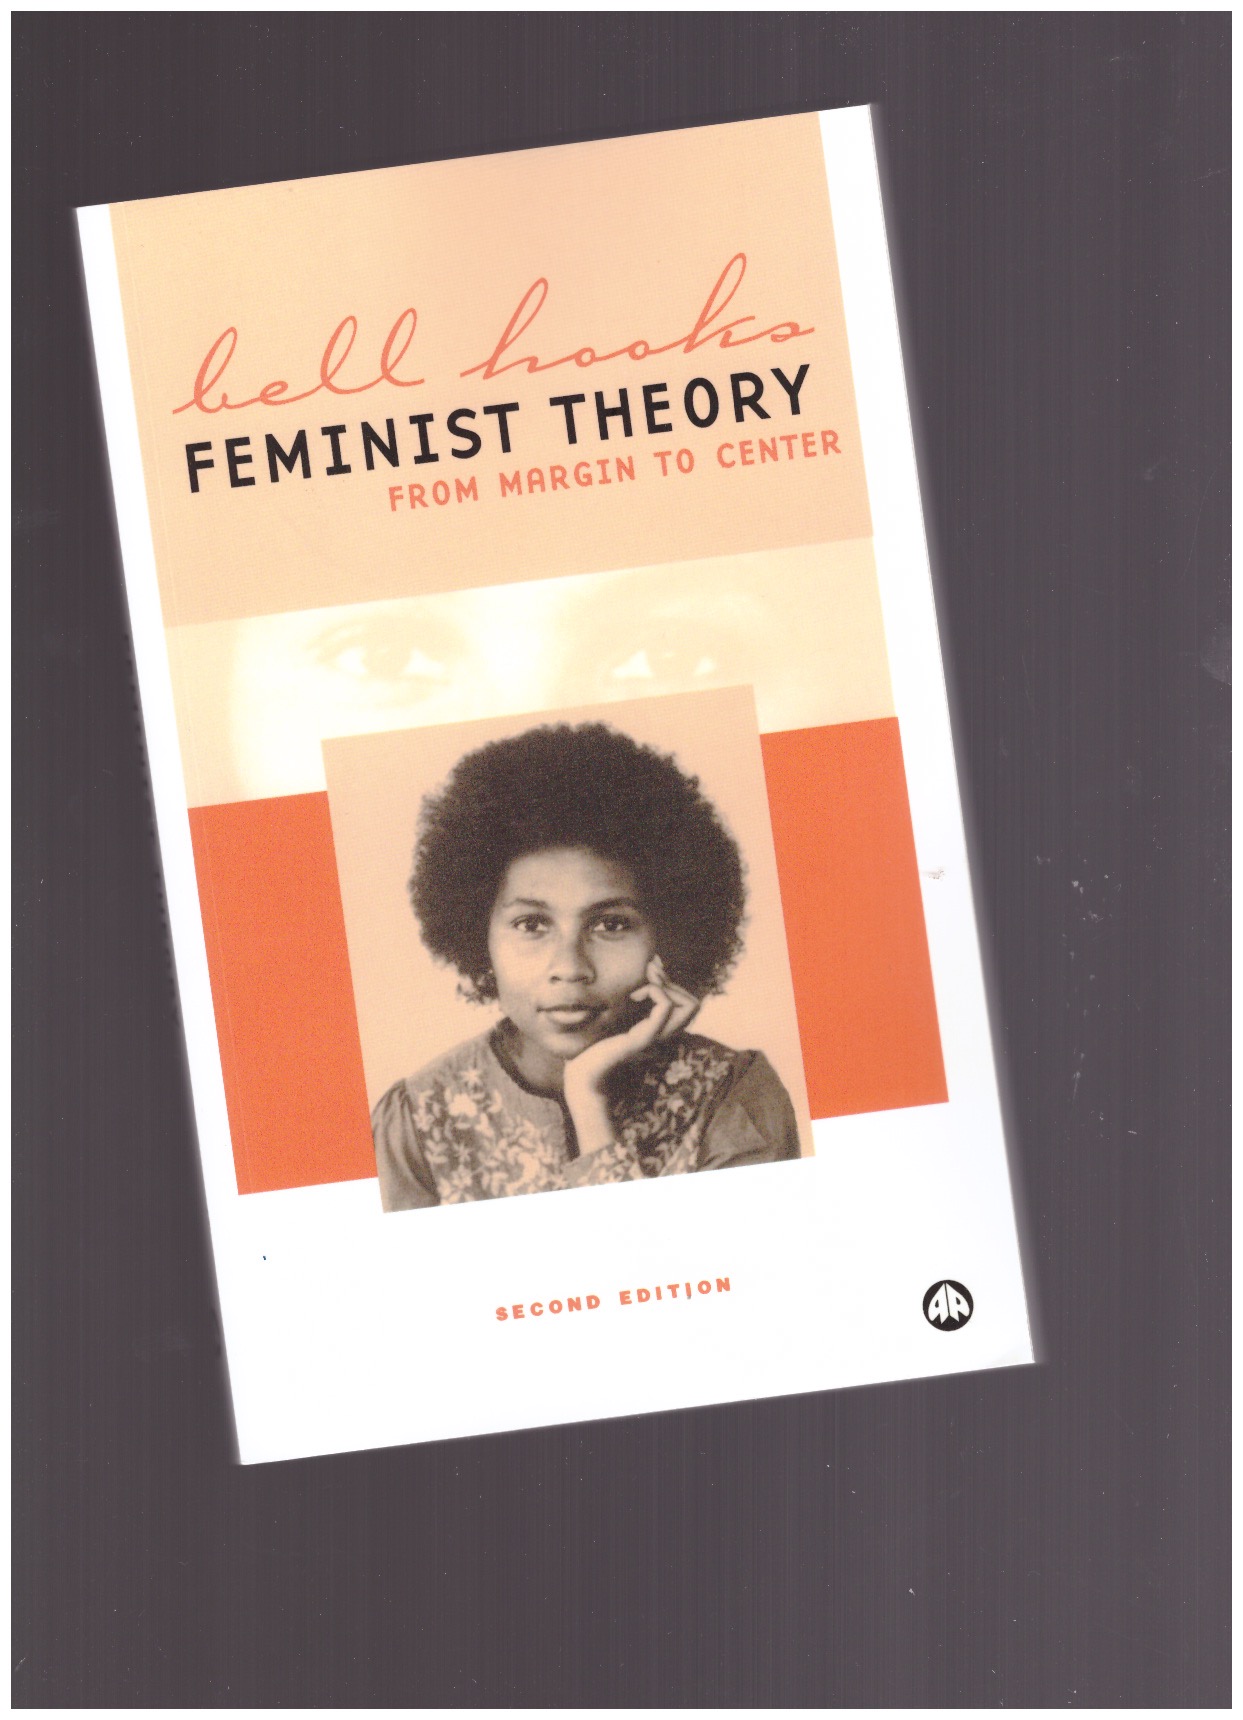 hooks, bell - Feminist Theory